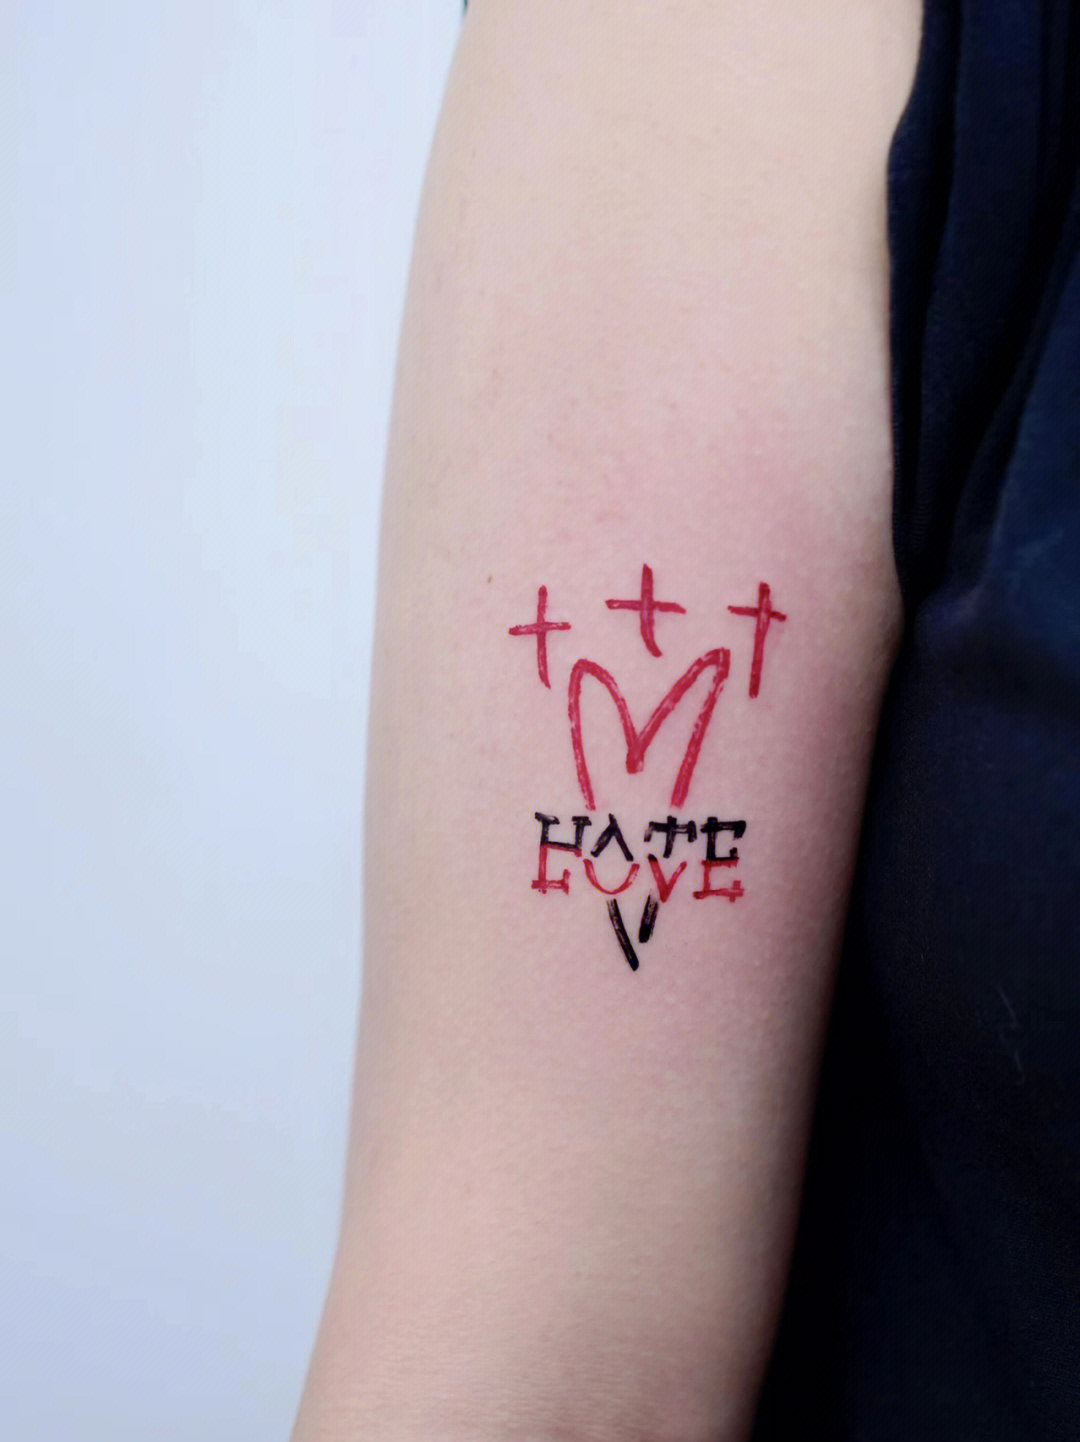 代表恨的纹身图片